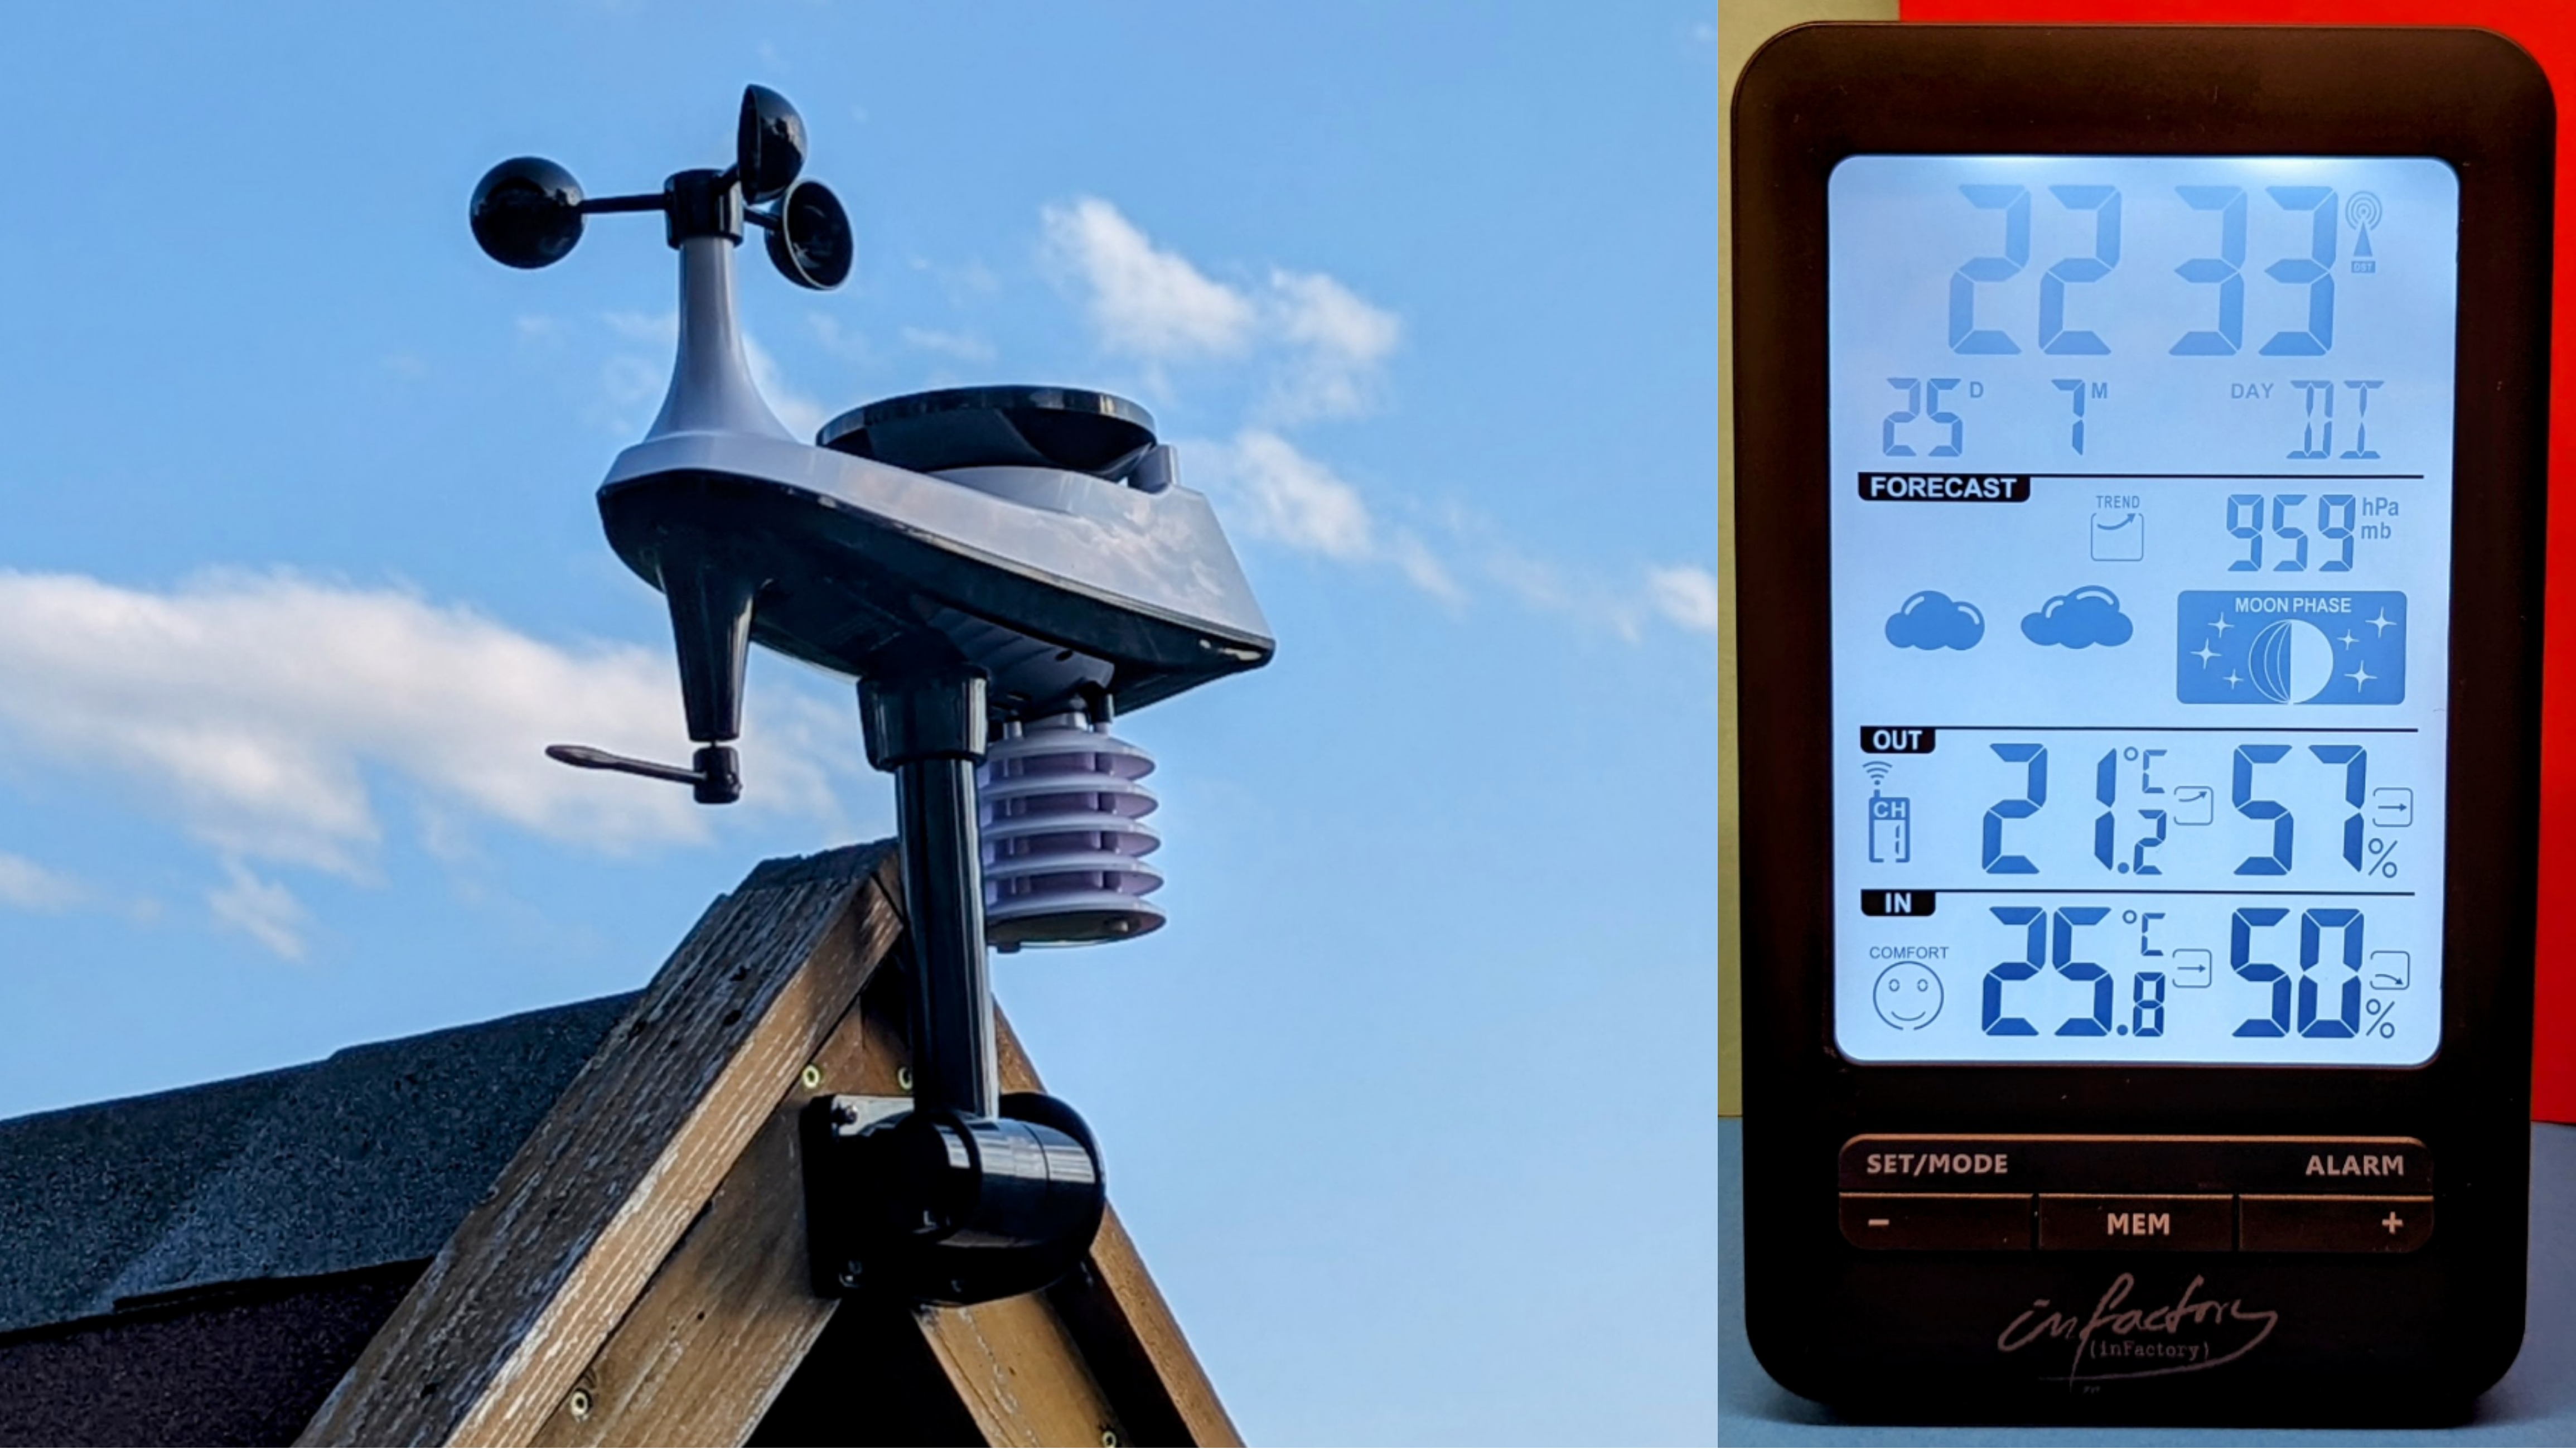 Ratgeber Wetterstationen: Uhrzeit, Regenwarnung Home und steuern | TechStage Smart